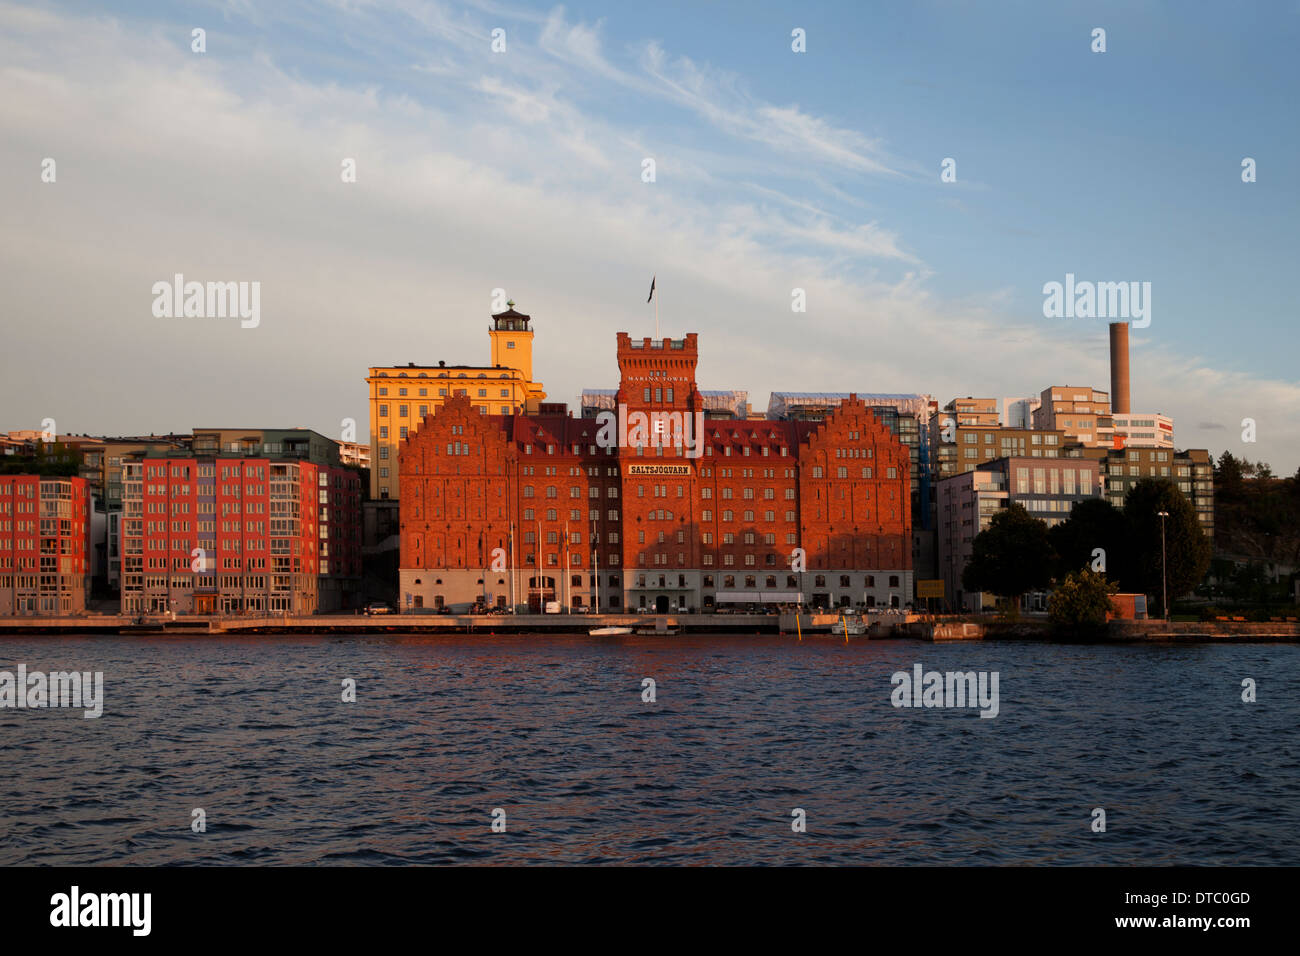 Des bâtiments de la ville et du paysage marin au cours de crépuscule à Stockholm, Suède. Banque D'Images